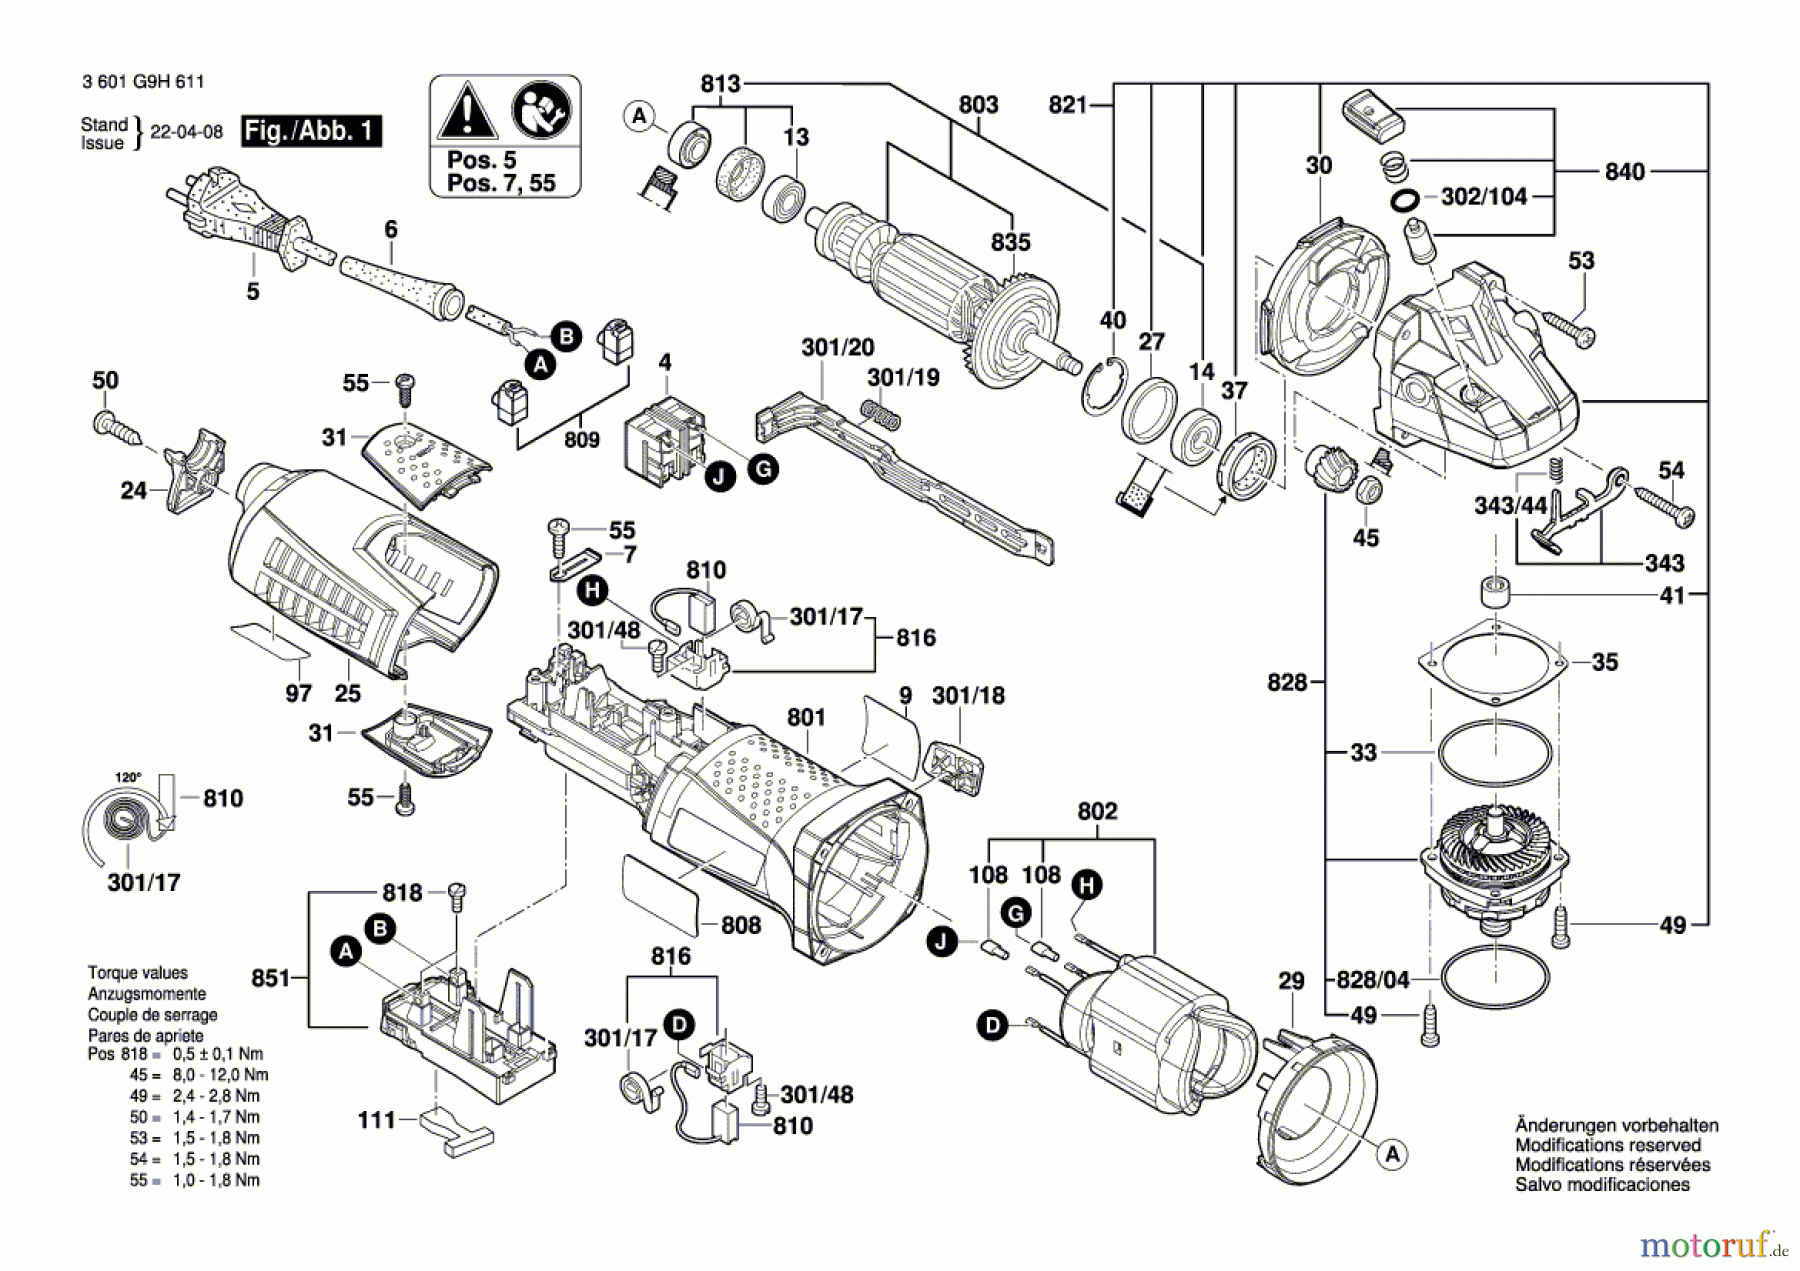  Bosch Werkzeug Winkelschleifer Hg 10-125VS Seite 1